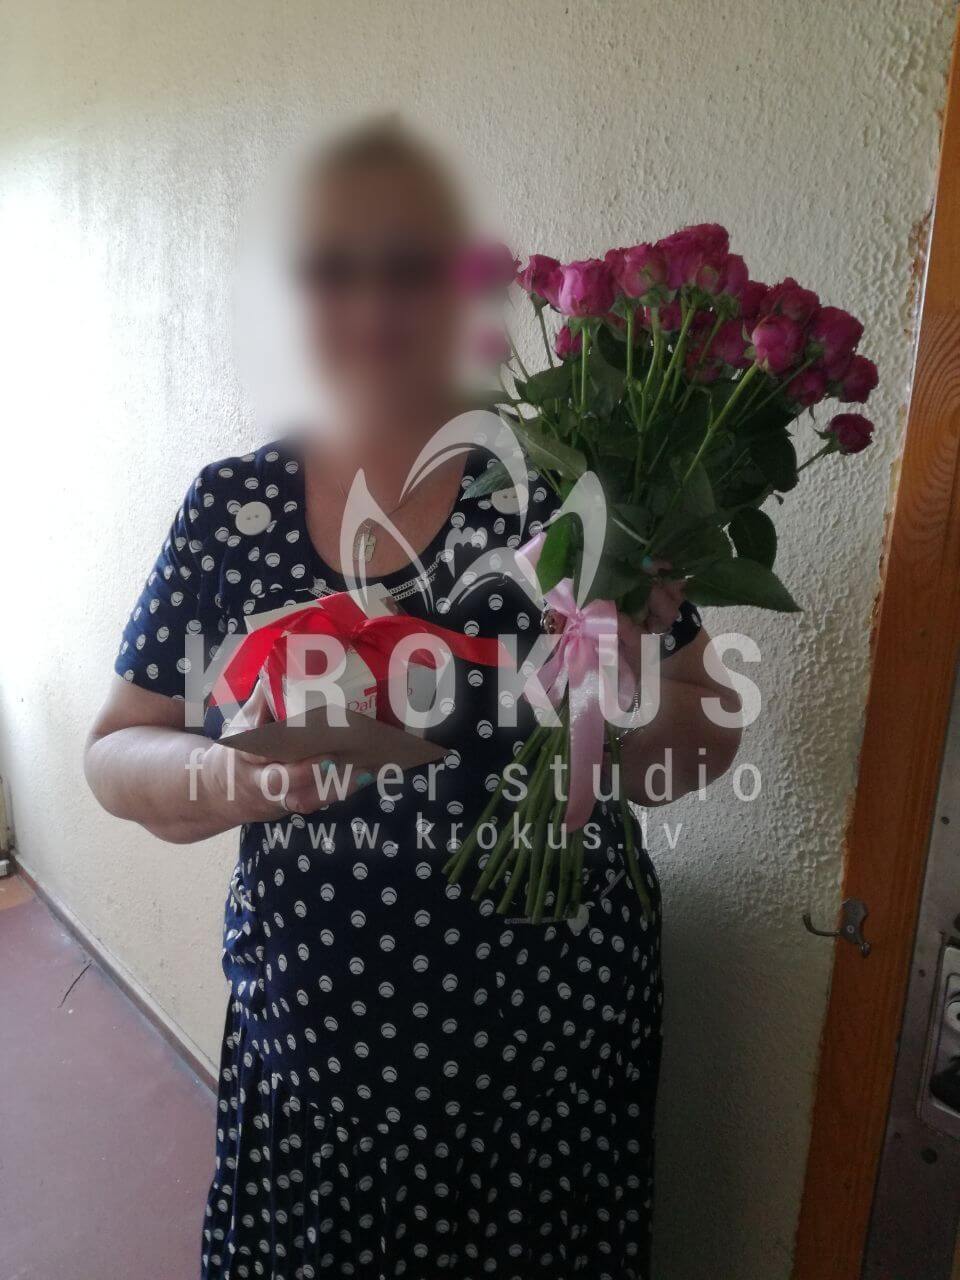 Deliver flowers to Rīga (shrub roses)